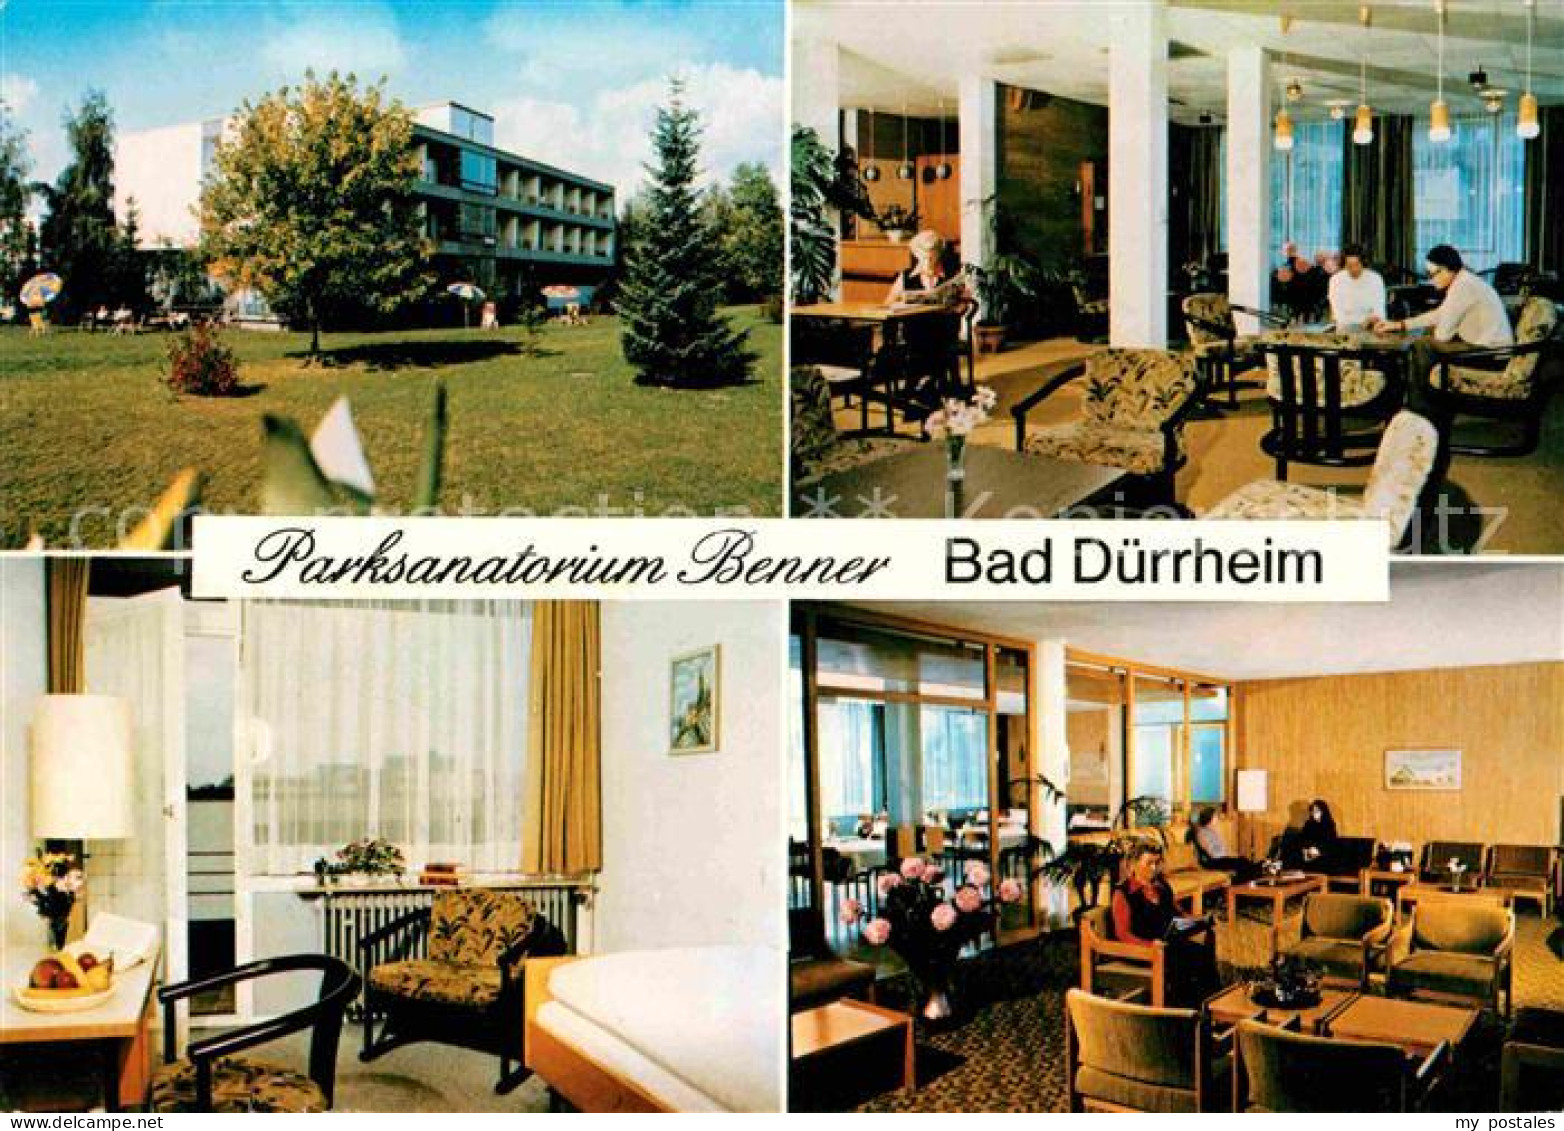 72760264 Bad Duerrheim Parksanatorium Benner Bad Duerrheim - Bad Duerrheim